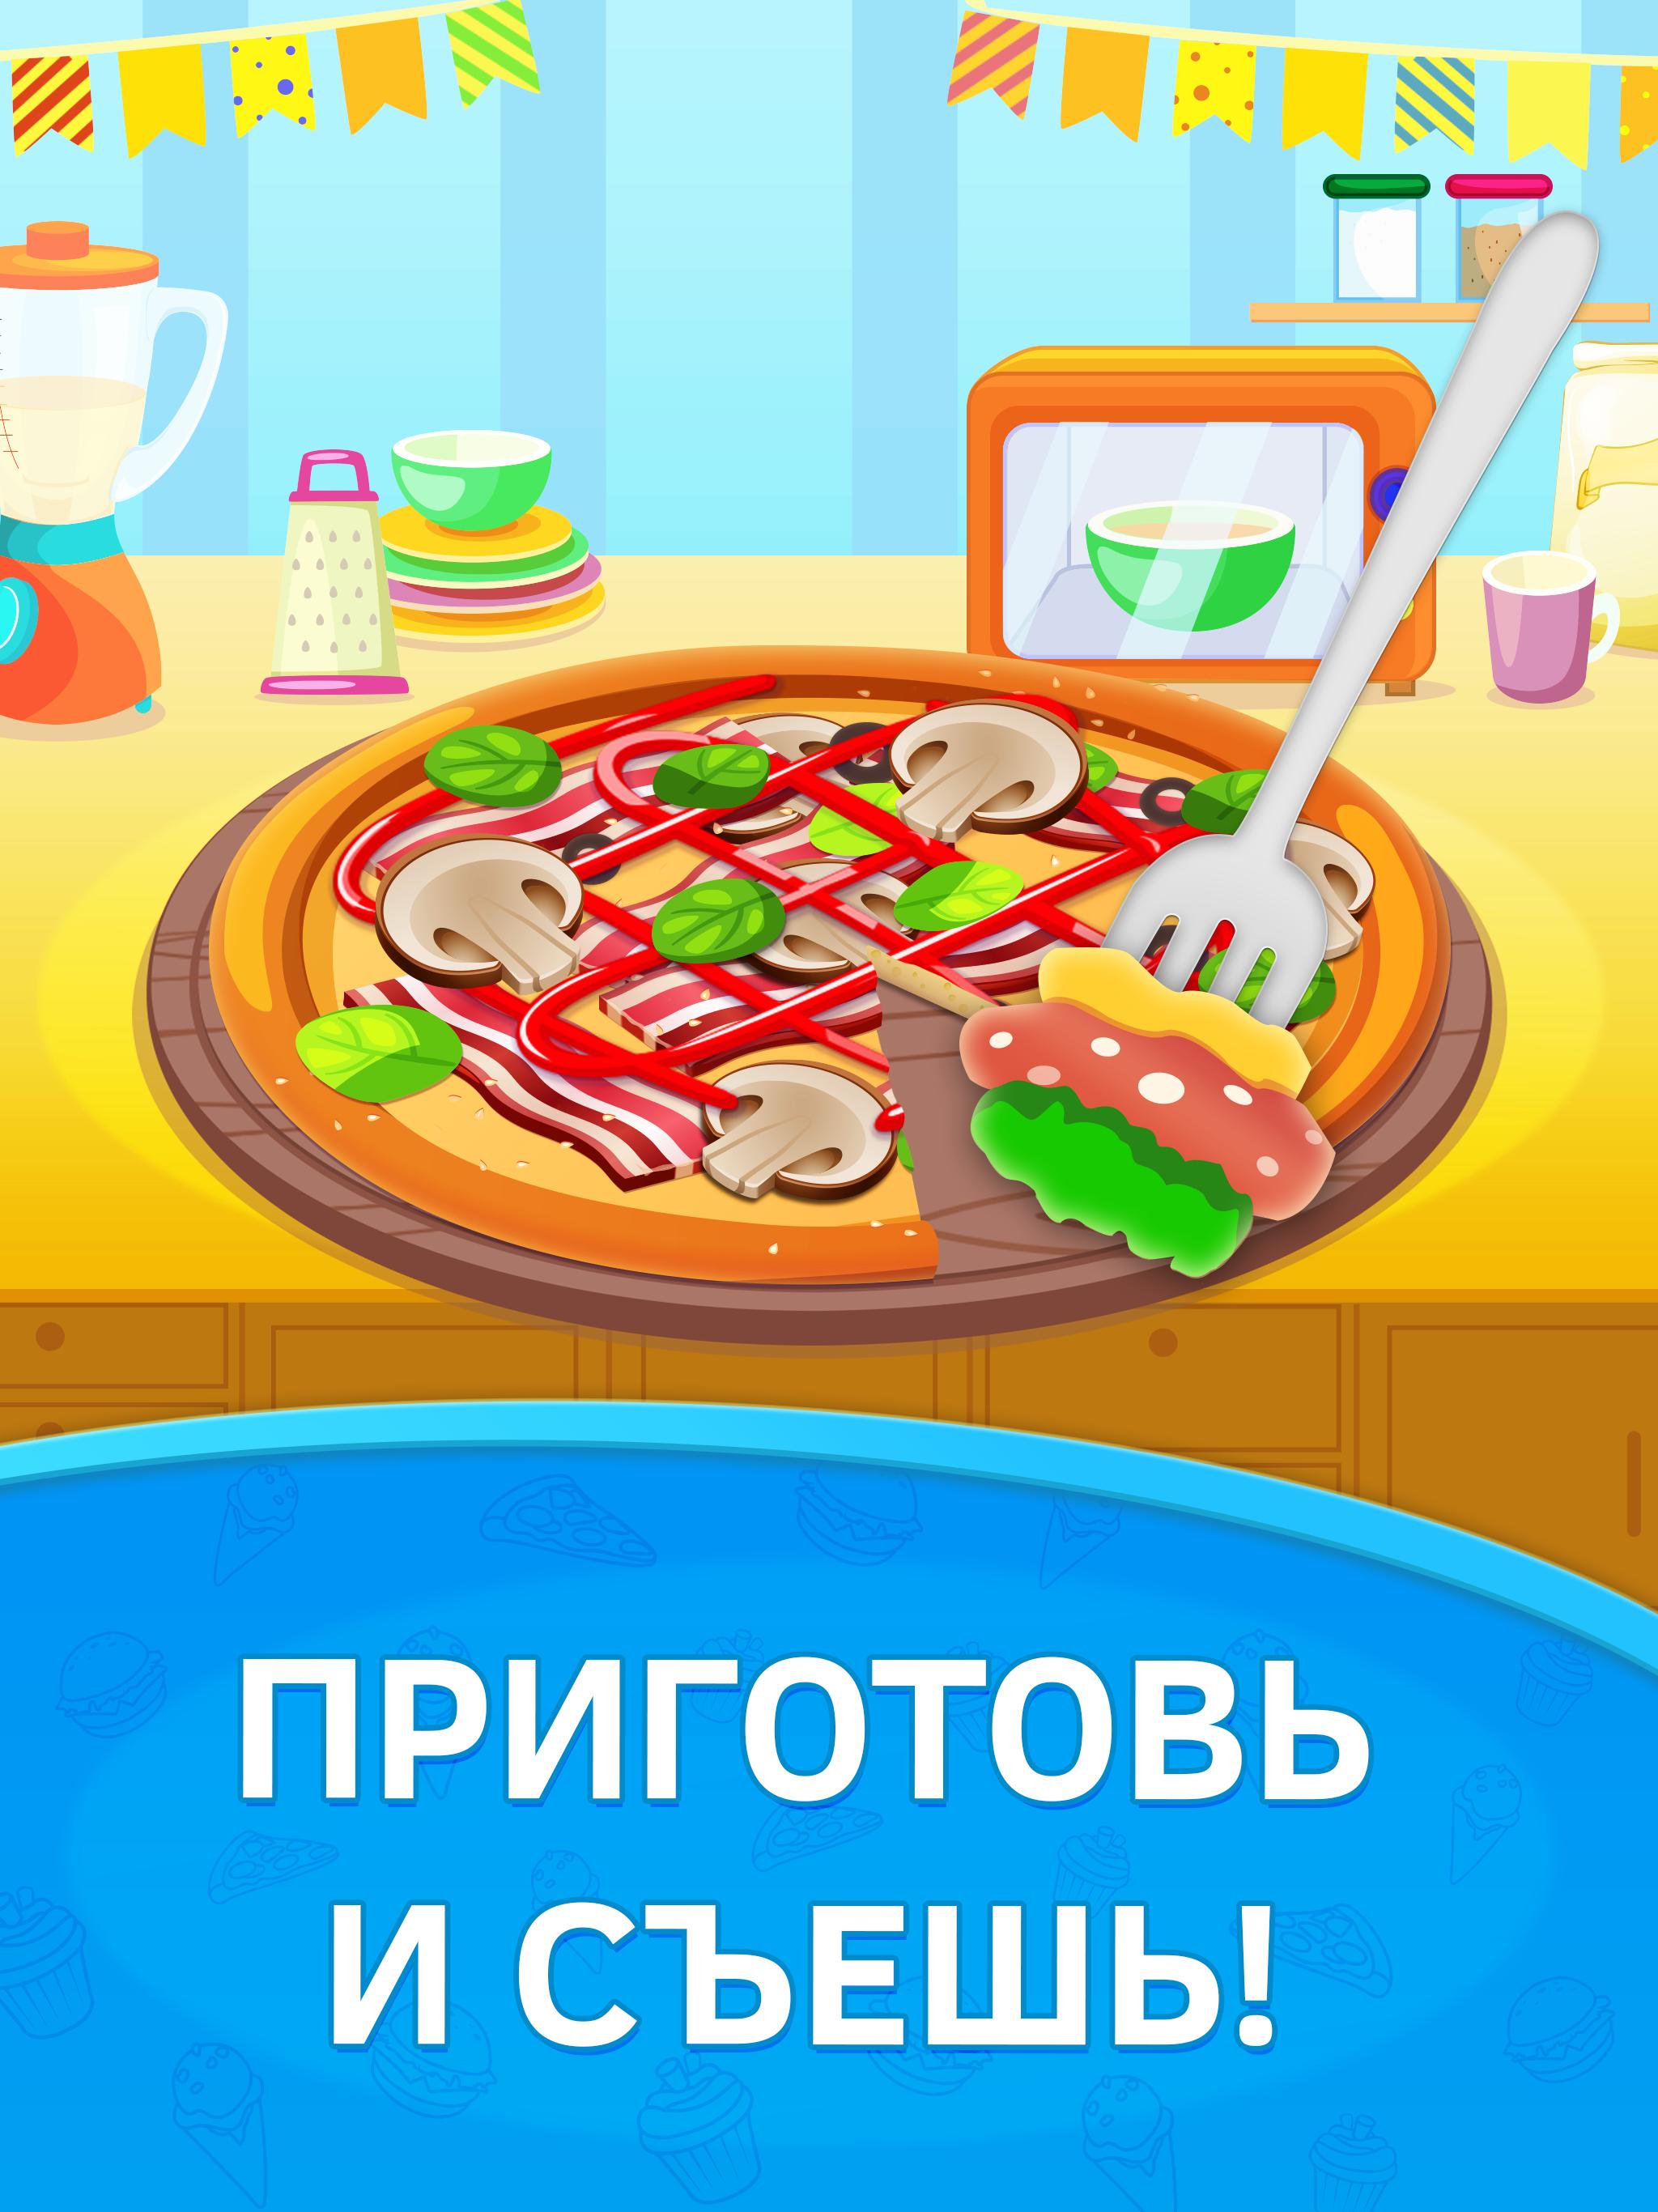 играть онлайн бесплатно готовить пиццу играть онлайн бесплатно фото 72